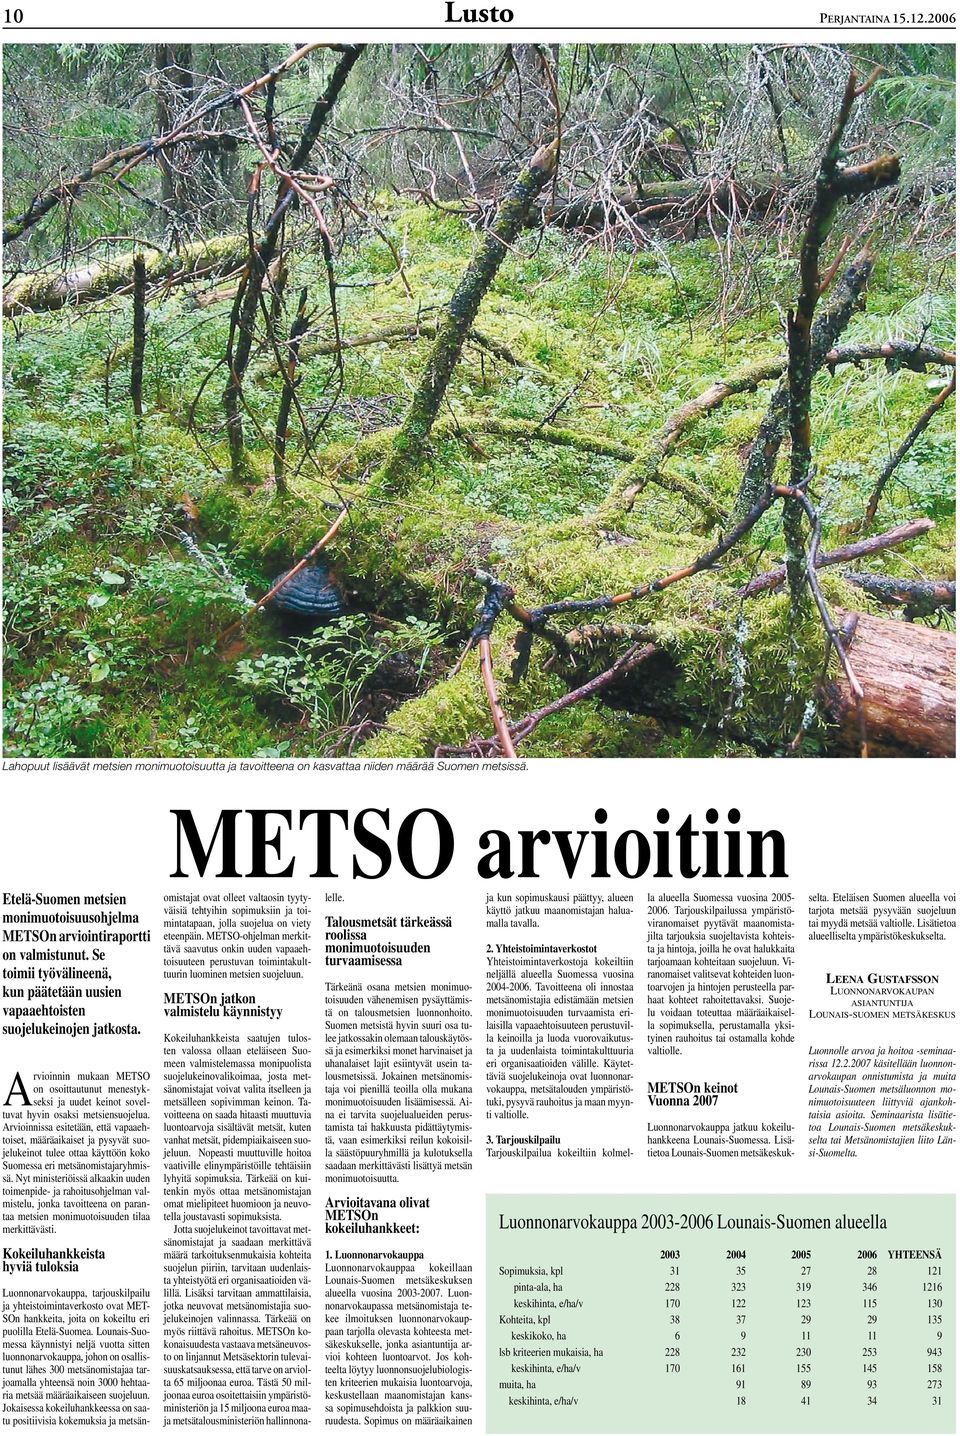 Arvioinnin mukaan METSO on osoittautunut menestykseksi ja uudet keinot soveltuvat hyvin osaksi metsiensuojelua.